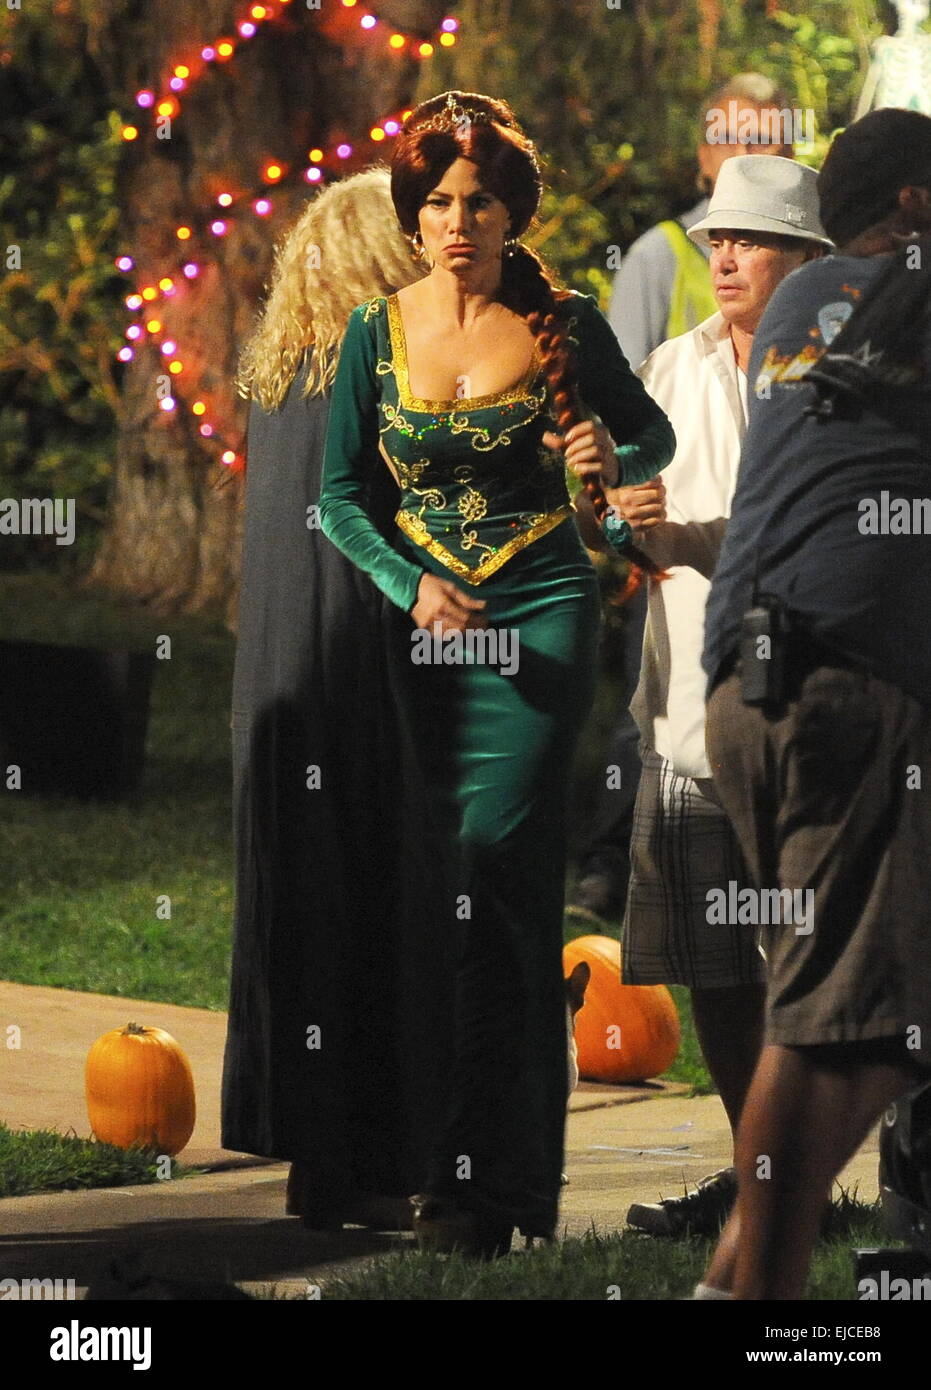 Sofia Vergara trägt eine Prinzessin Fiona von Shrek Kostüm am Set von  "Modern Family" Dreharbeiten zu einer Halloween-Episode. Die Schauspielerin  wurde von co-Star Ed O'Neil verbunden, die Benjamin Franklin für den Anlass